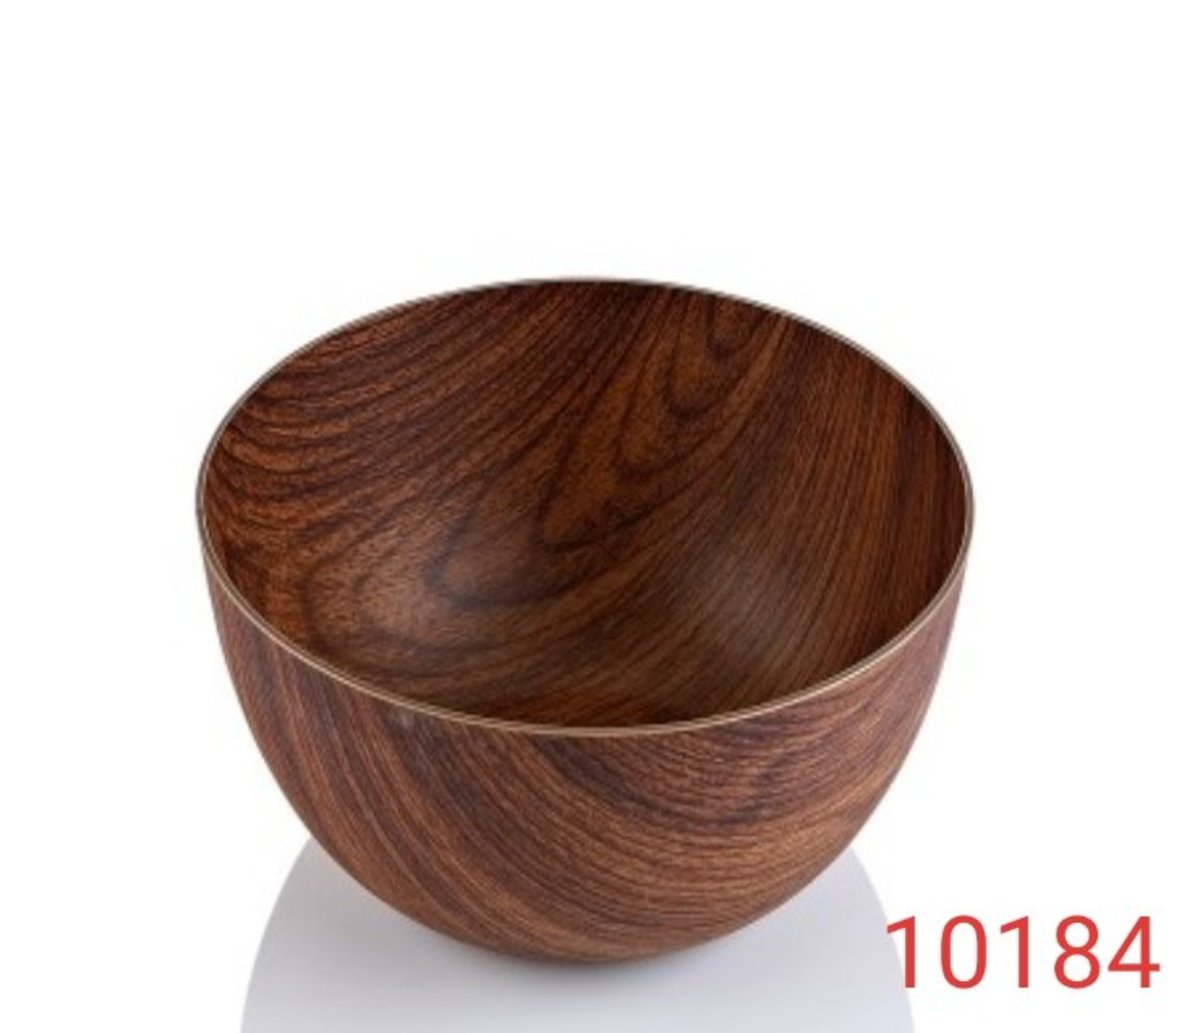 Evelin 木紋圓形碗 PS物料生產, 衛生耐用易清洗   24x10.5cm 土耳其 (10184M)